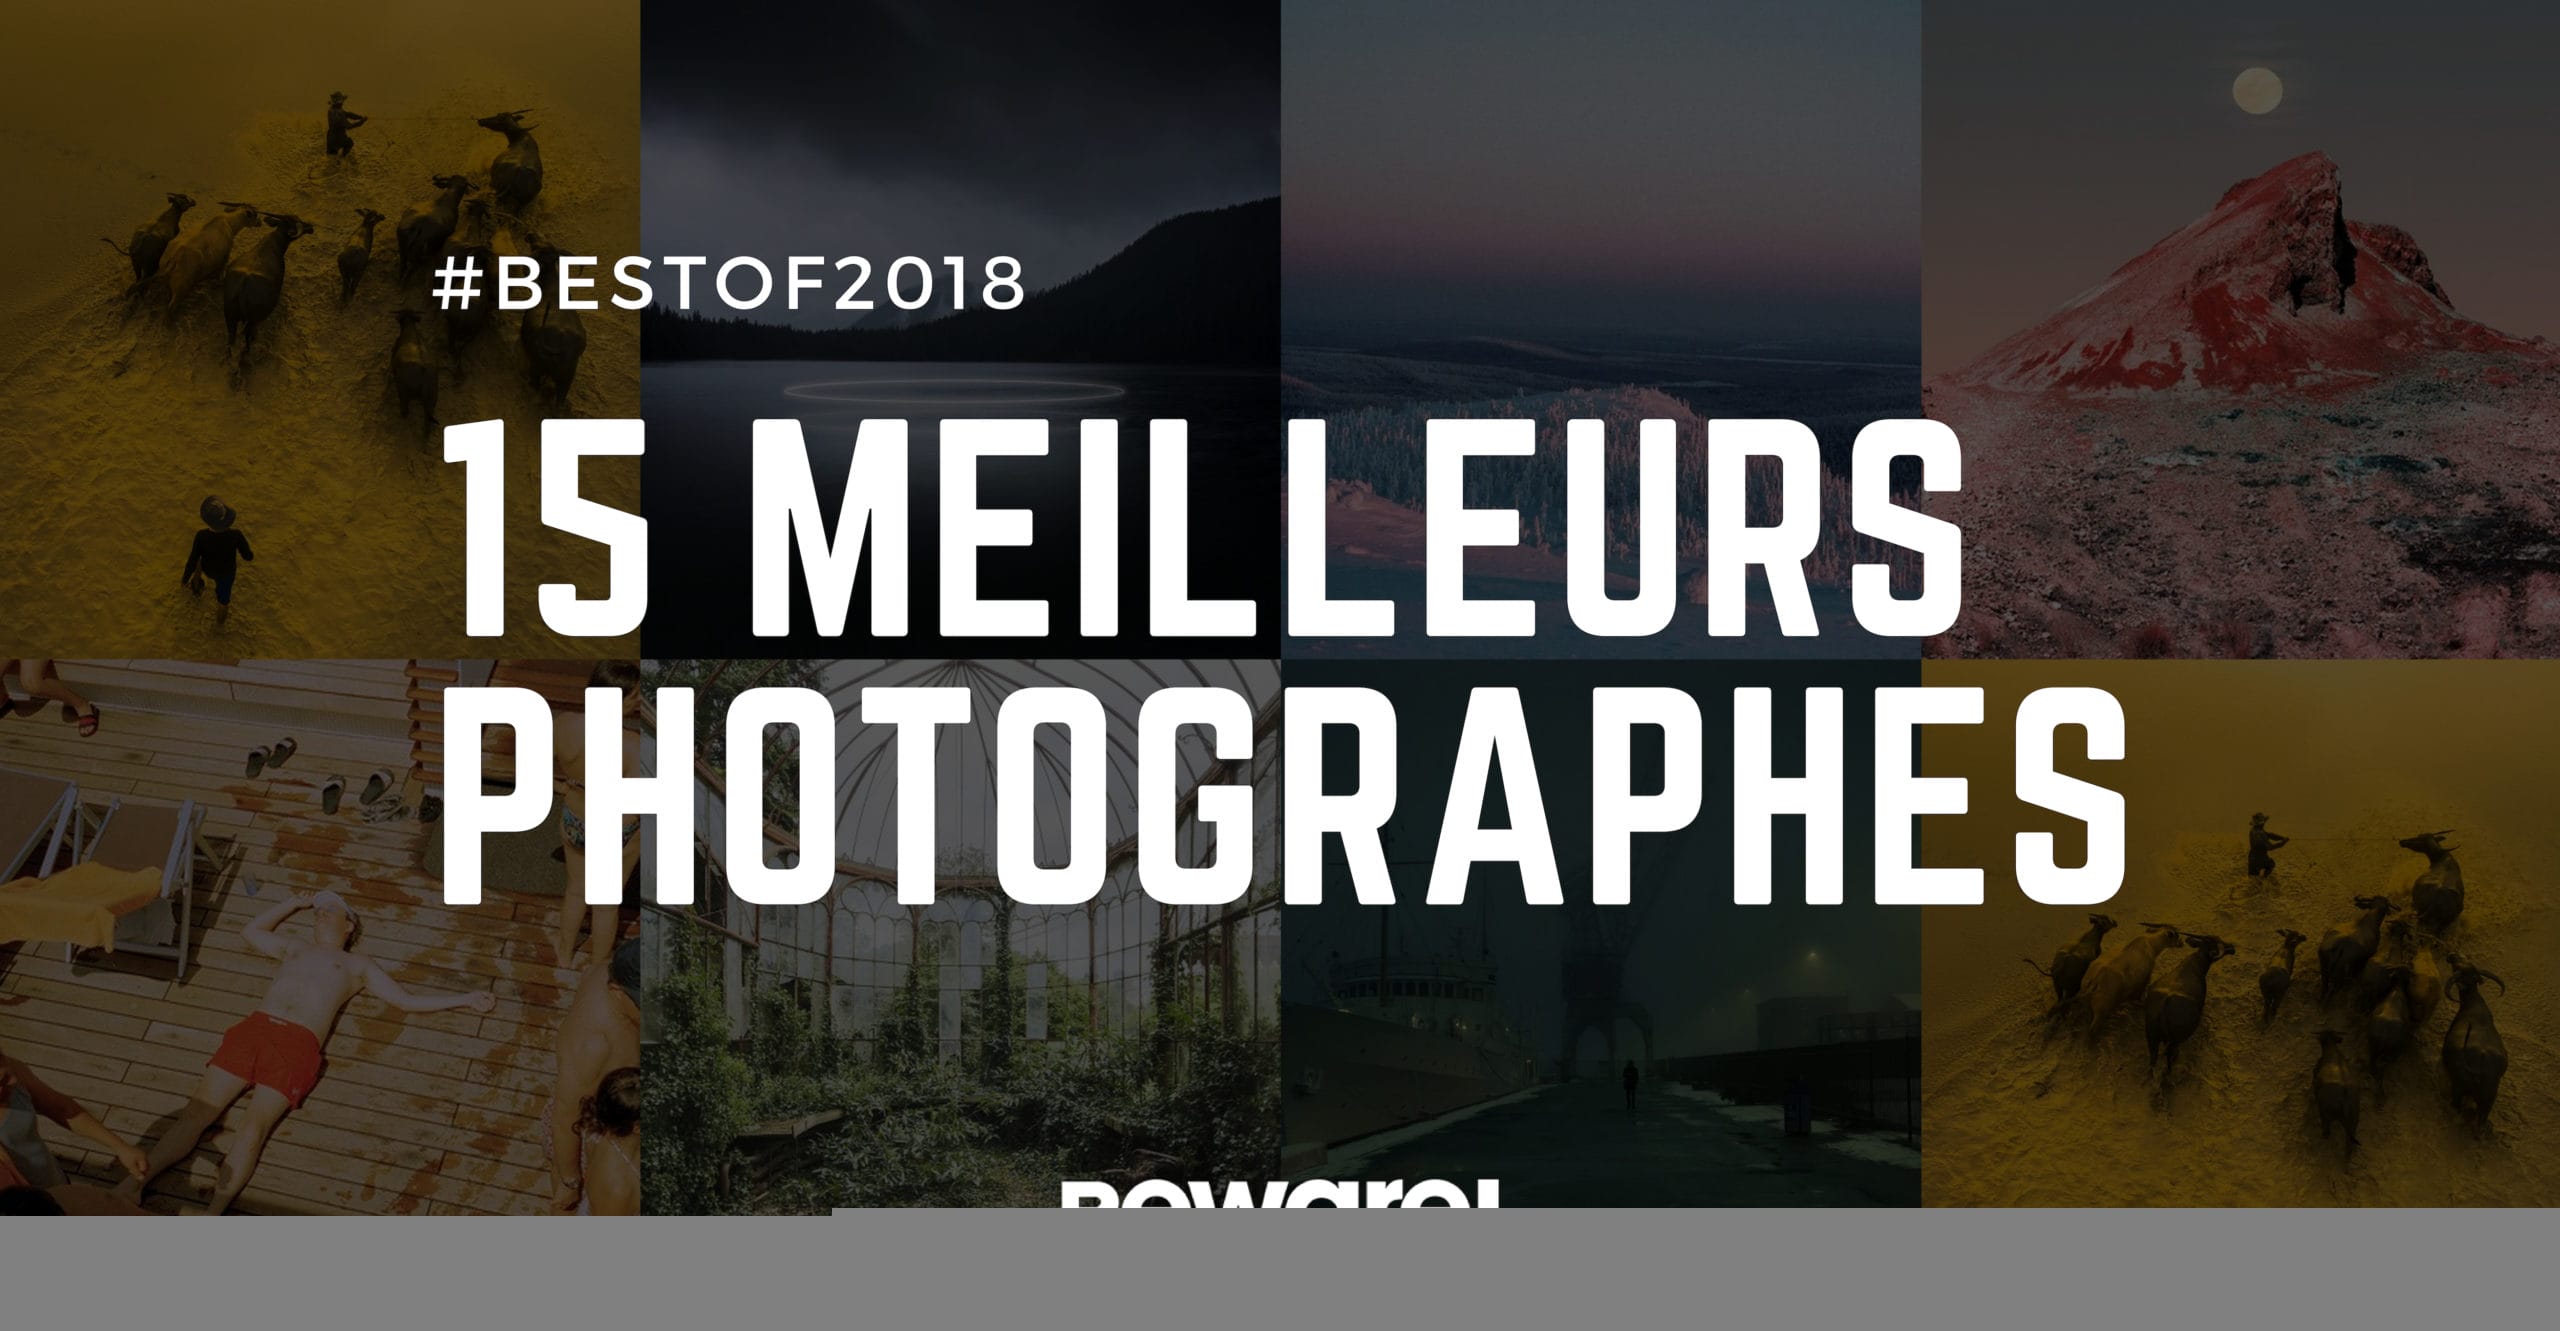 Les 15 meilleurs photographes de 2018 1